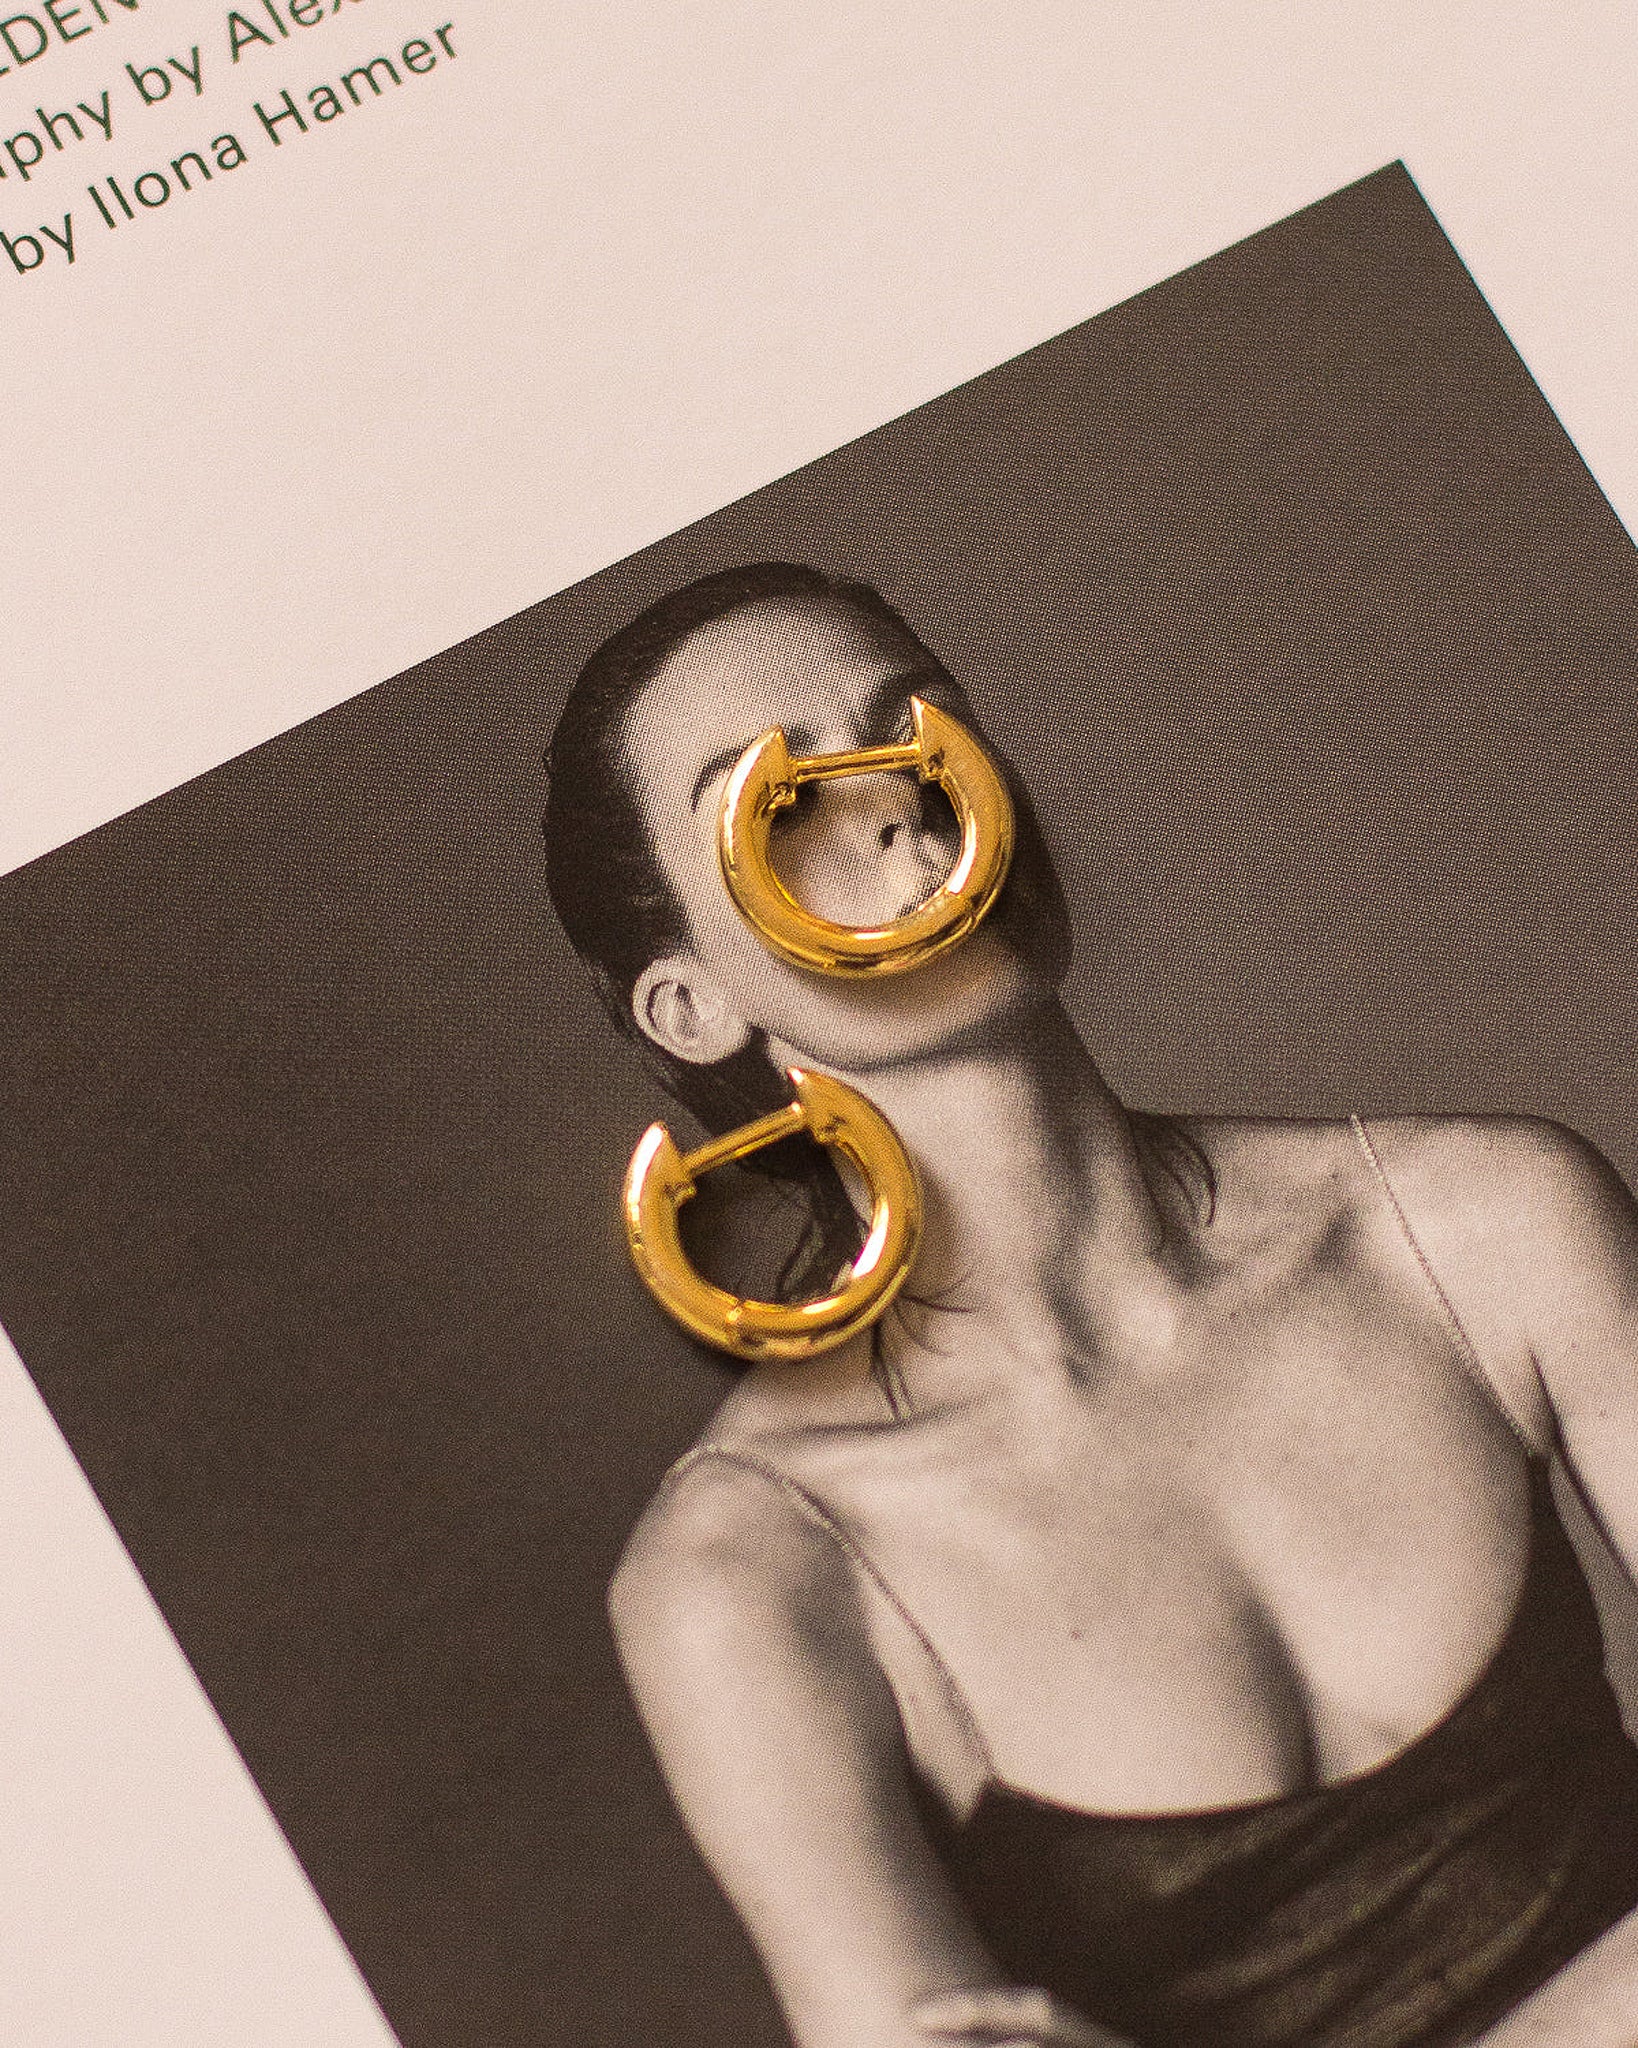 Luv Aj Sicily Tube Huggie Hoop Earrings in Polished 14k Antique Gold Plated